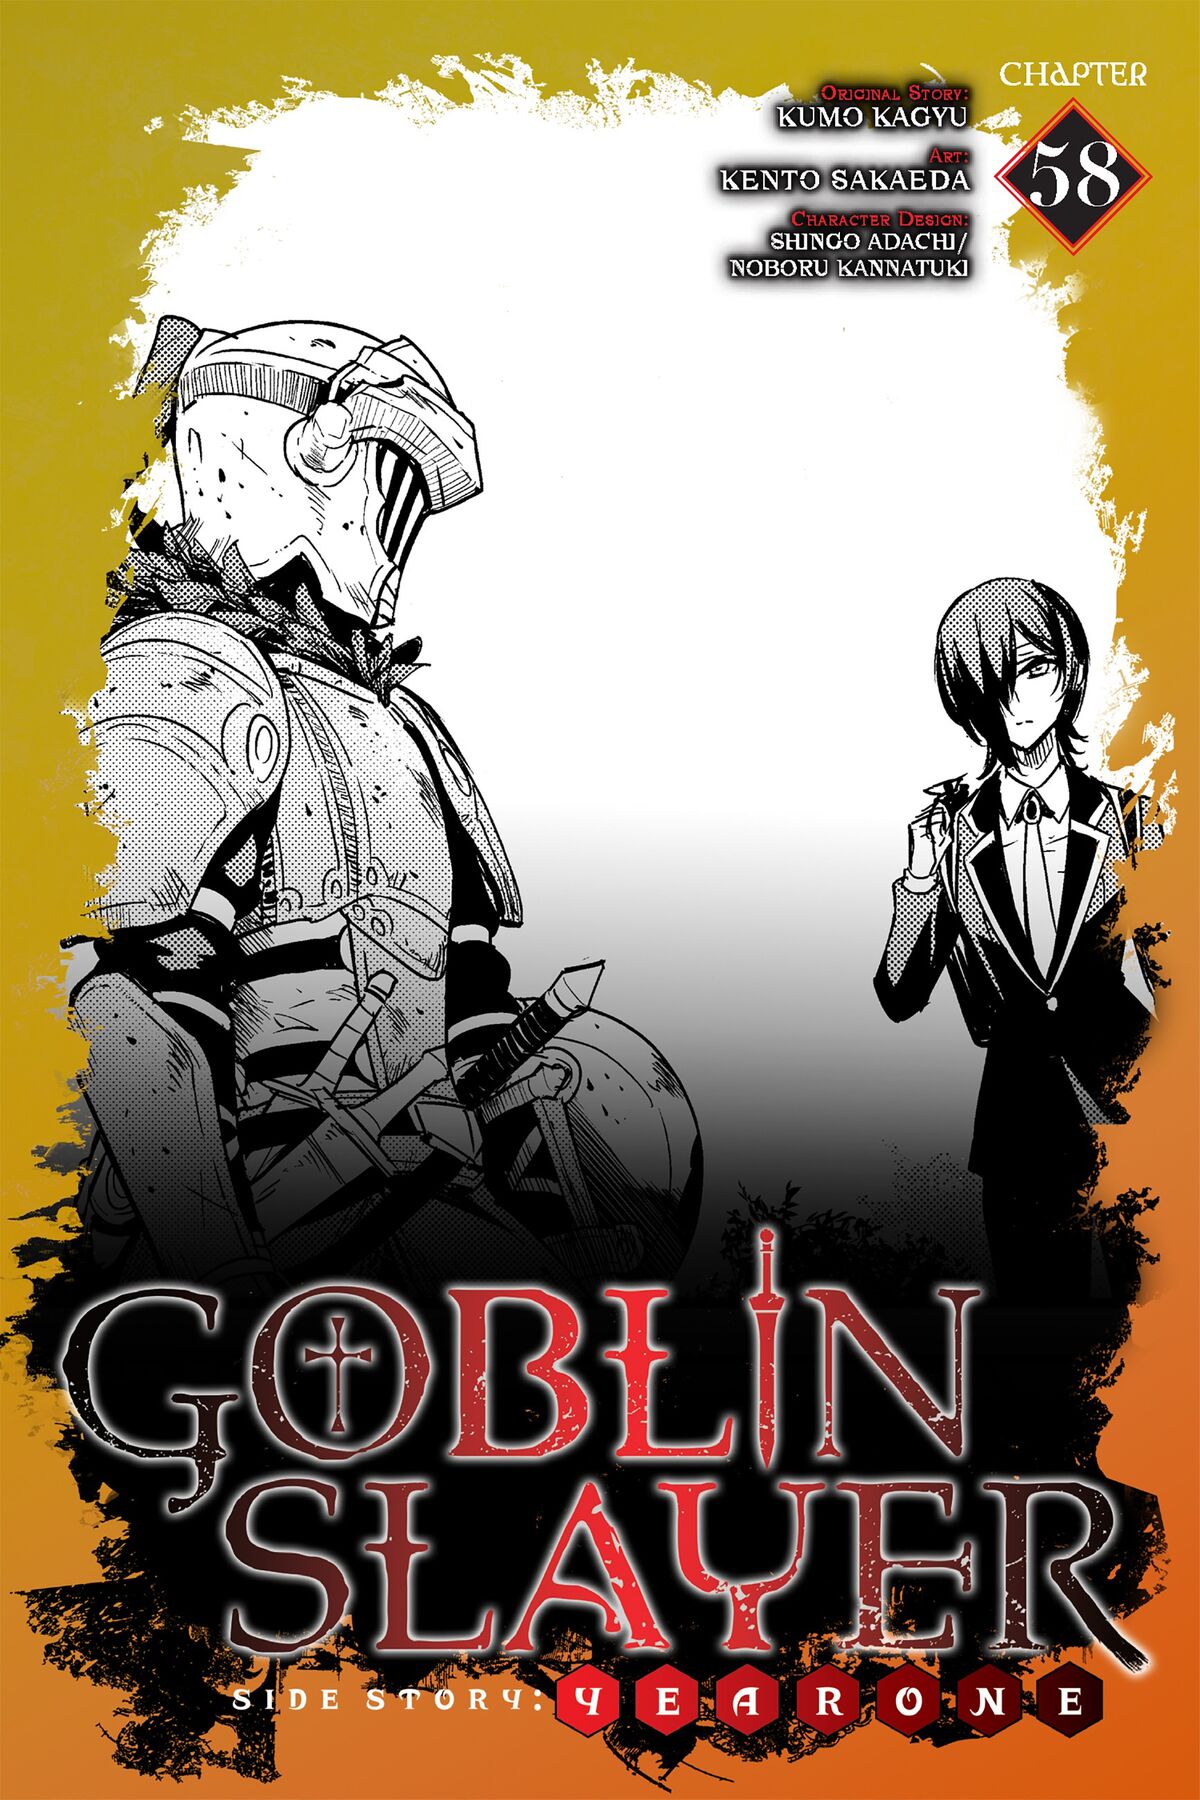 Year One Manga Chapter 1, Goblin Slayer Wiki